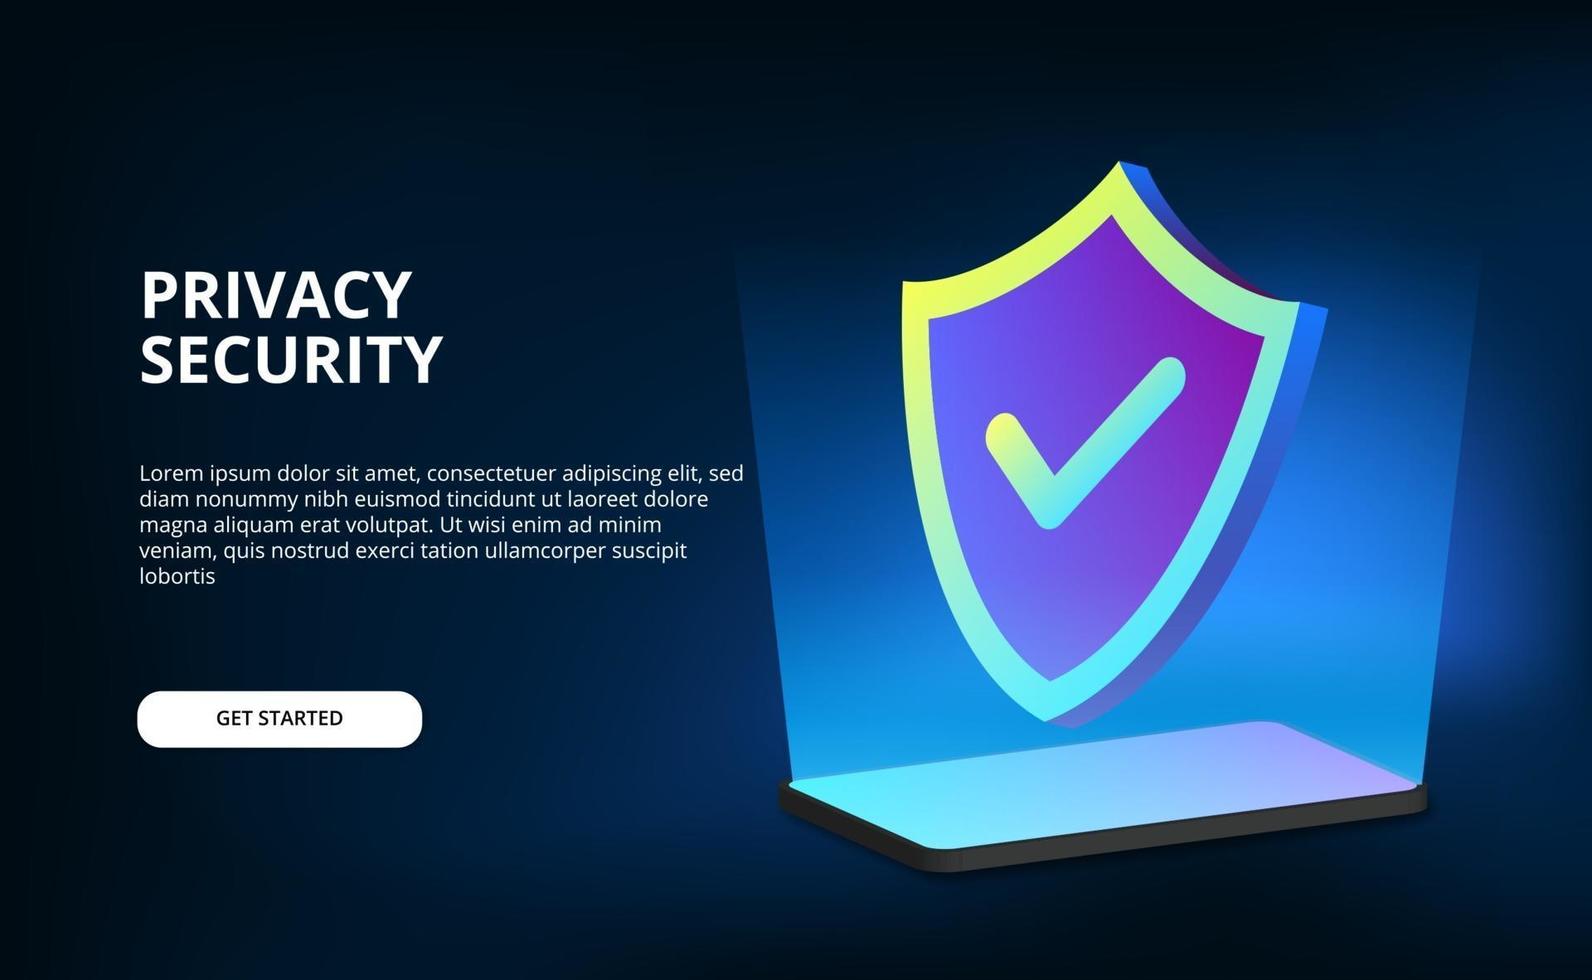 Escudo 3D segurança proteção de privacidade para telefone, computador, tecnologia de internet, cyber, com fundo escuro vetor